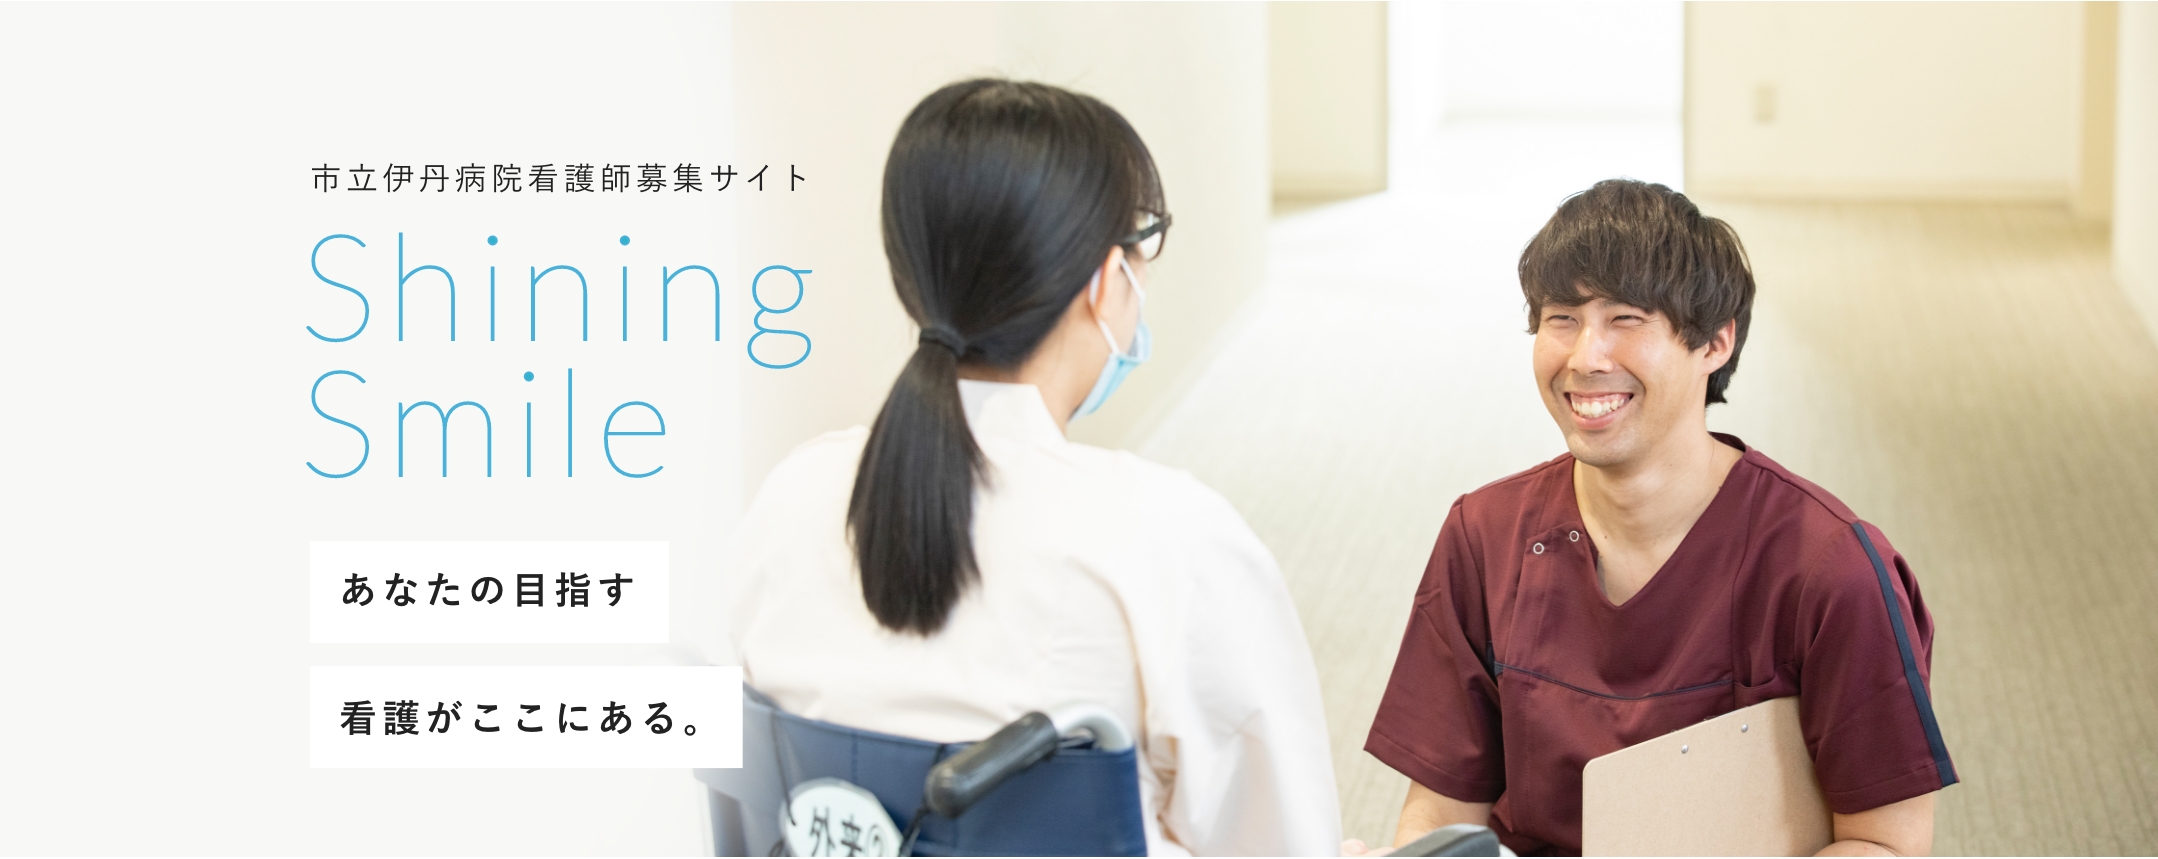 市立伊丹病院看護師募集サイト Shining Smile あなたの目指す看護がここにある。